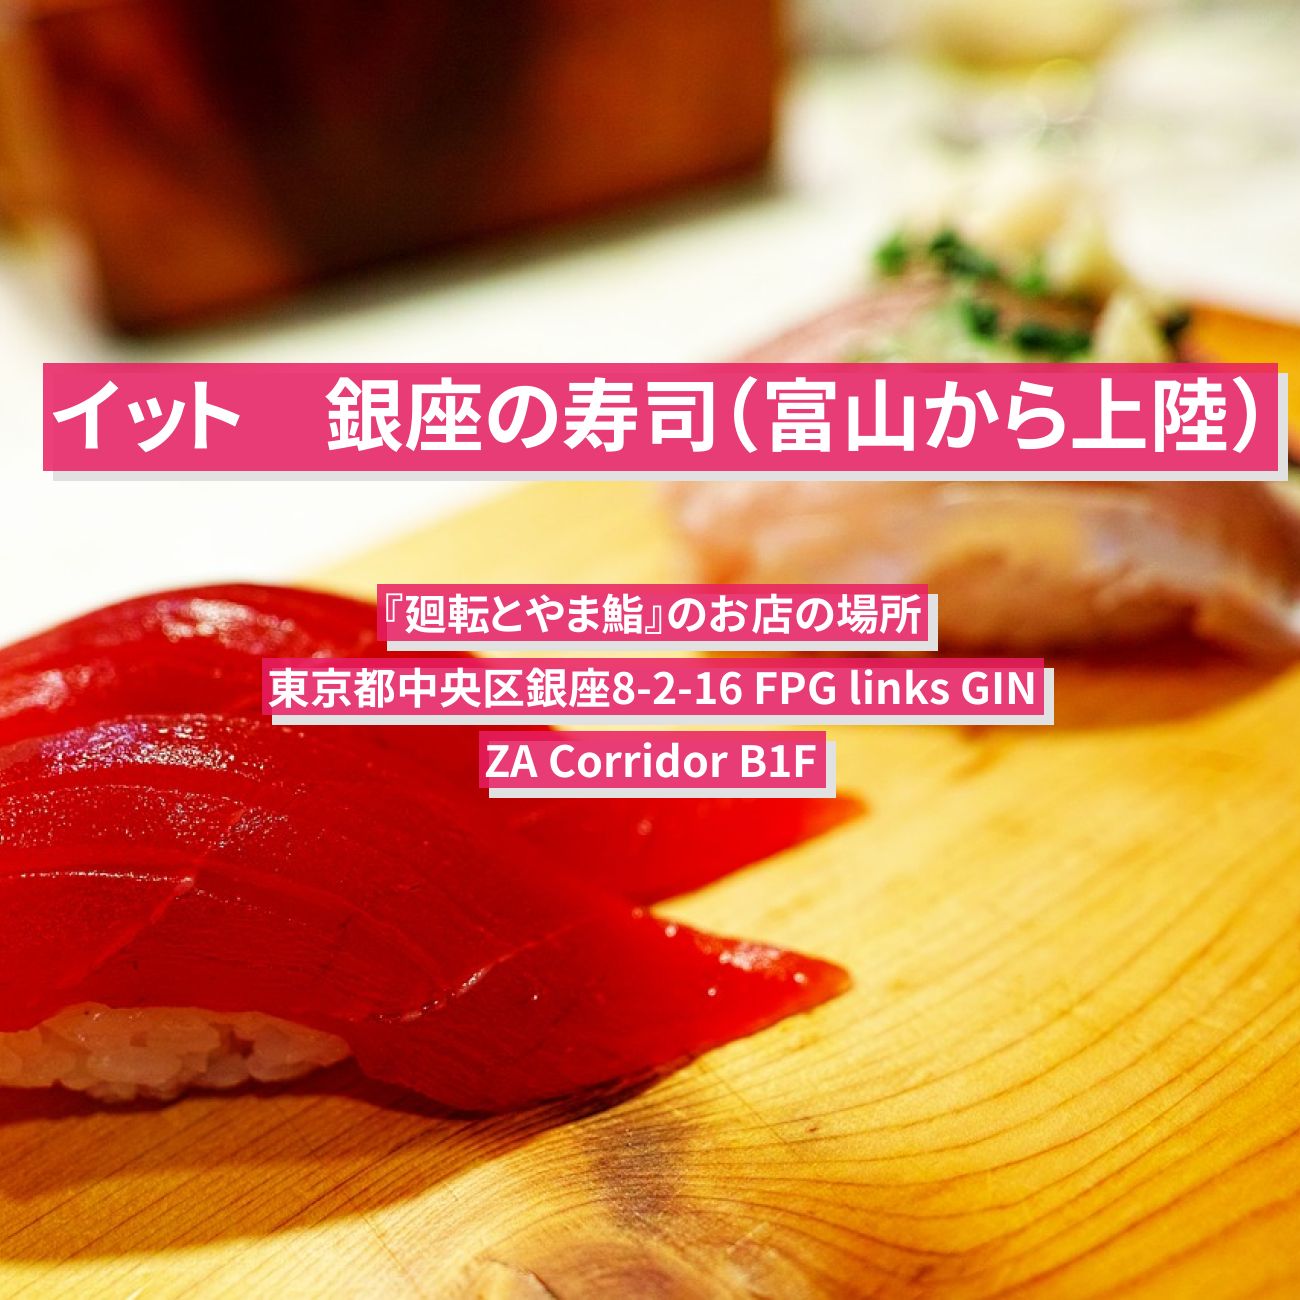 【イット】銀座の寿司（富山から上陸）『廻転とやま鮨』のお店の場所〔首都圏唯一のご当地グルメ〕